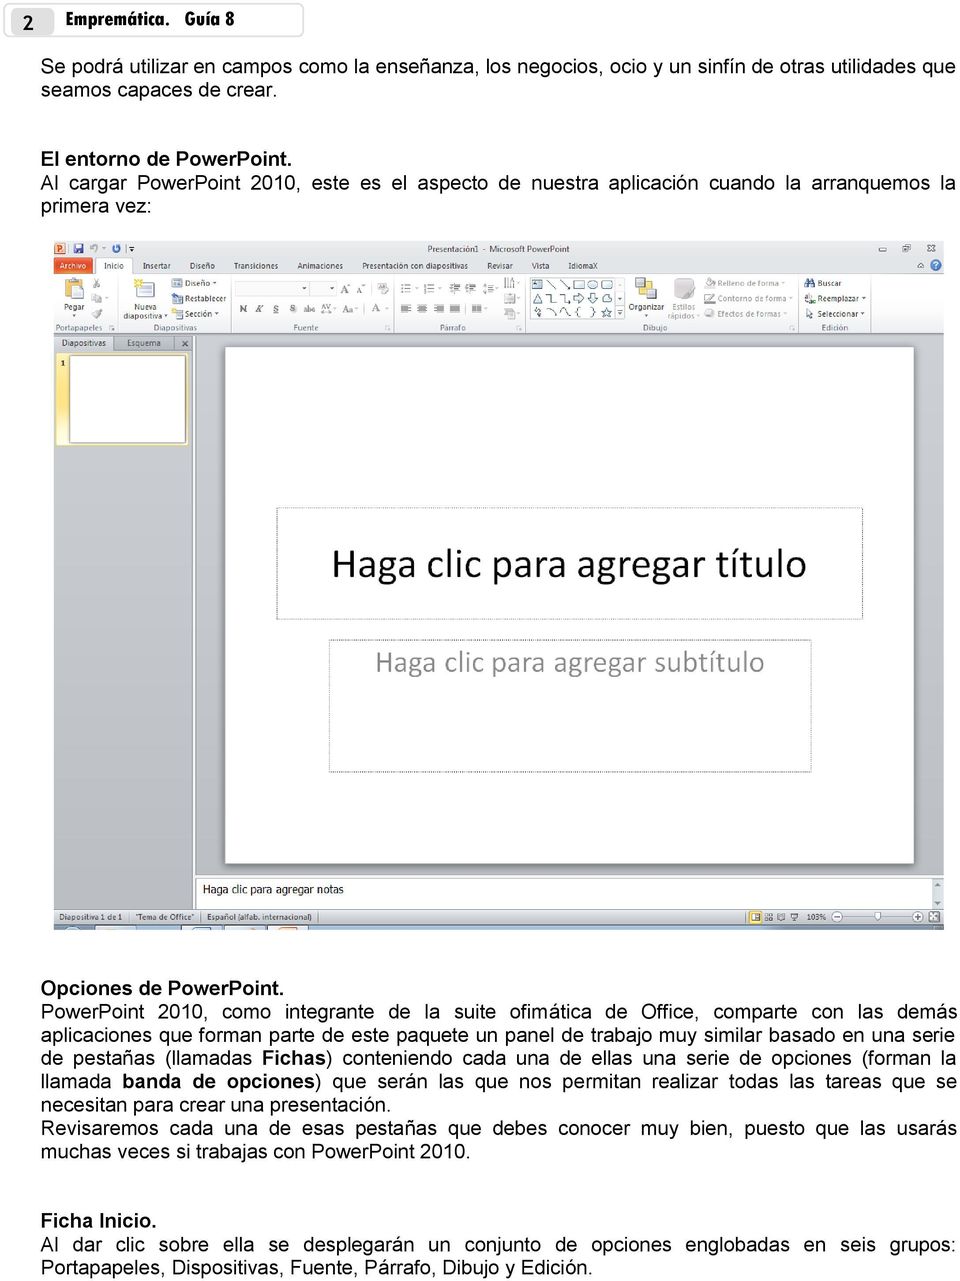 PowerPoint 2010, como integrante de la suite ofimática de Office, comparte con las demás aplicaciones que forman parte de este paquete un panel de trabajo muy similar basado en una serie de pestañas